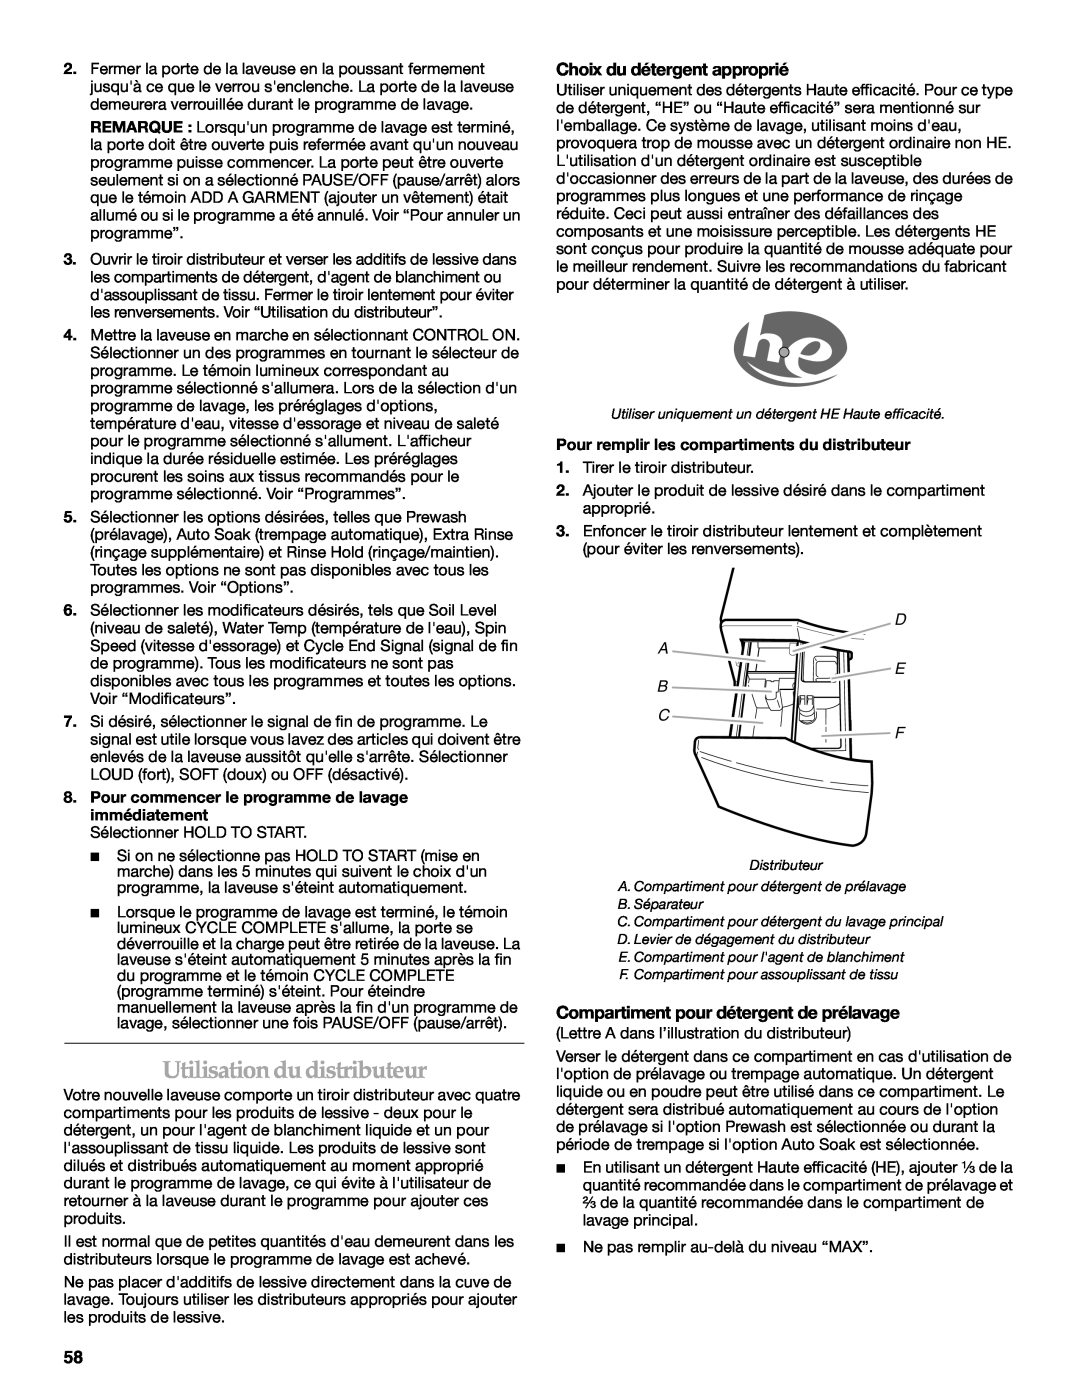 Maytag 8182969 manual Utilisation du distributeur, Choix du détergent approprié, Compartiment pour détergent de prélavage 